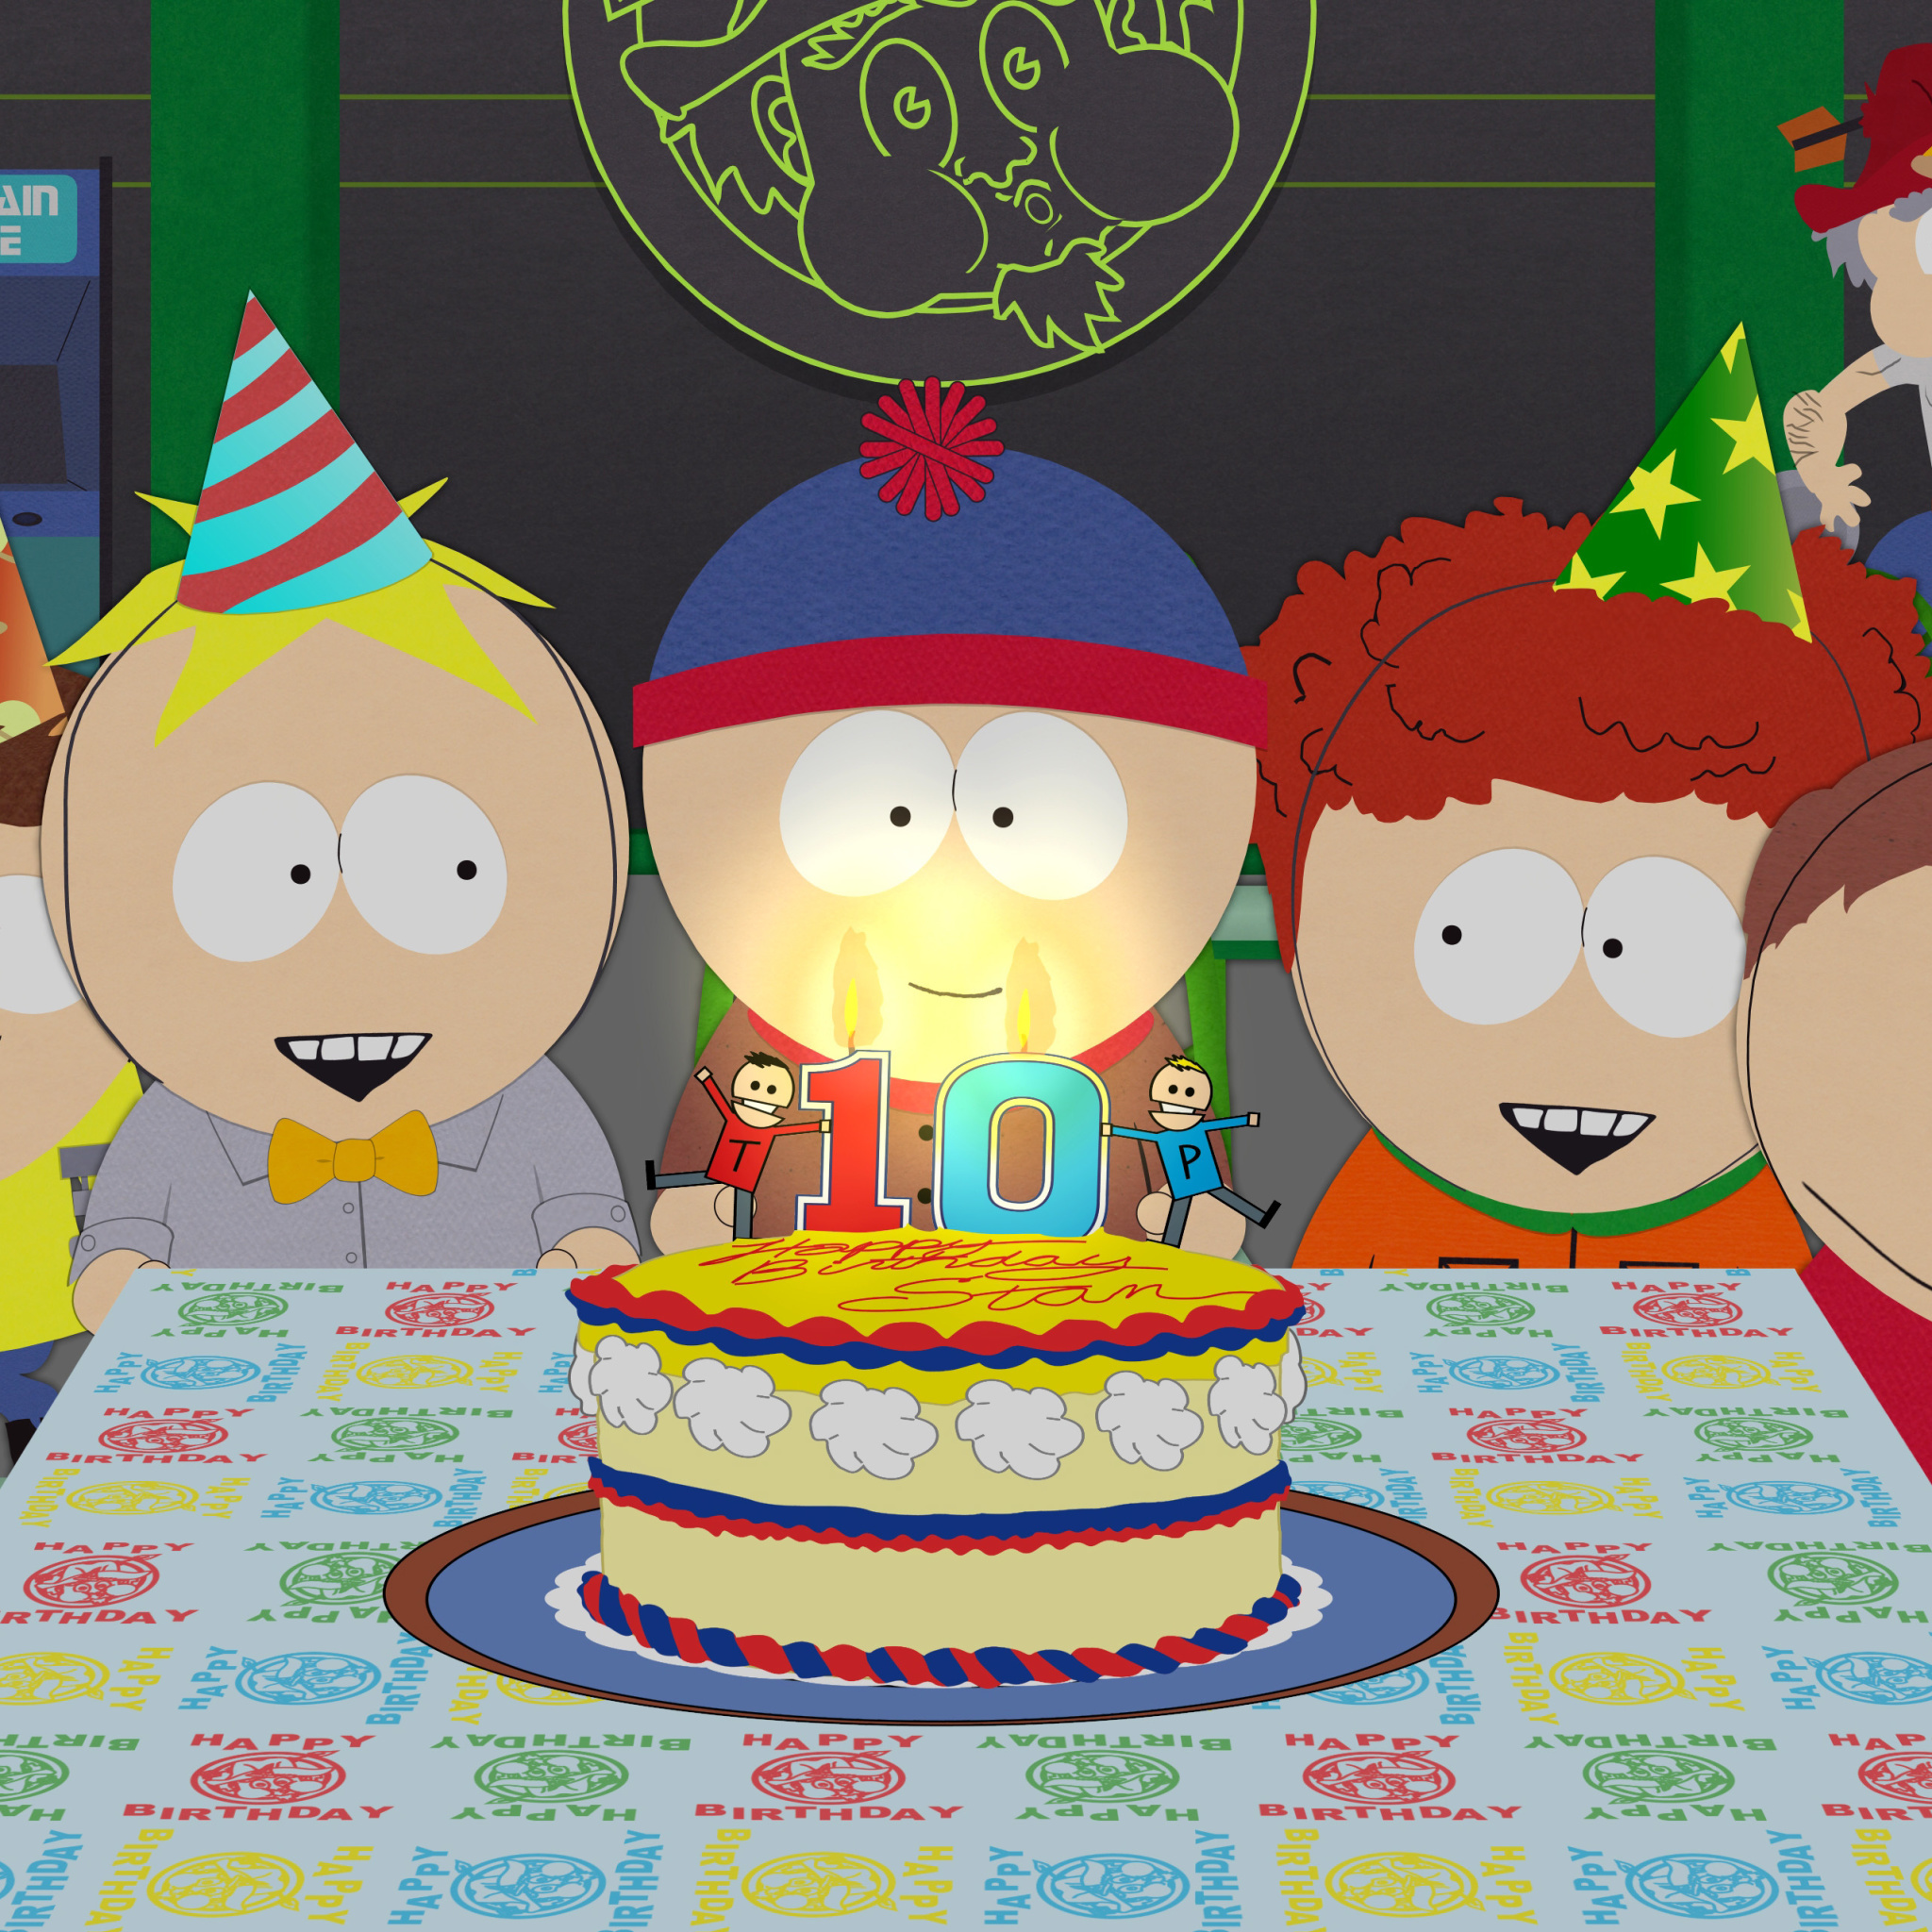 South Park Season 15 Stans Party screenshot #1 2048x2048